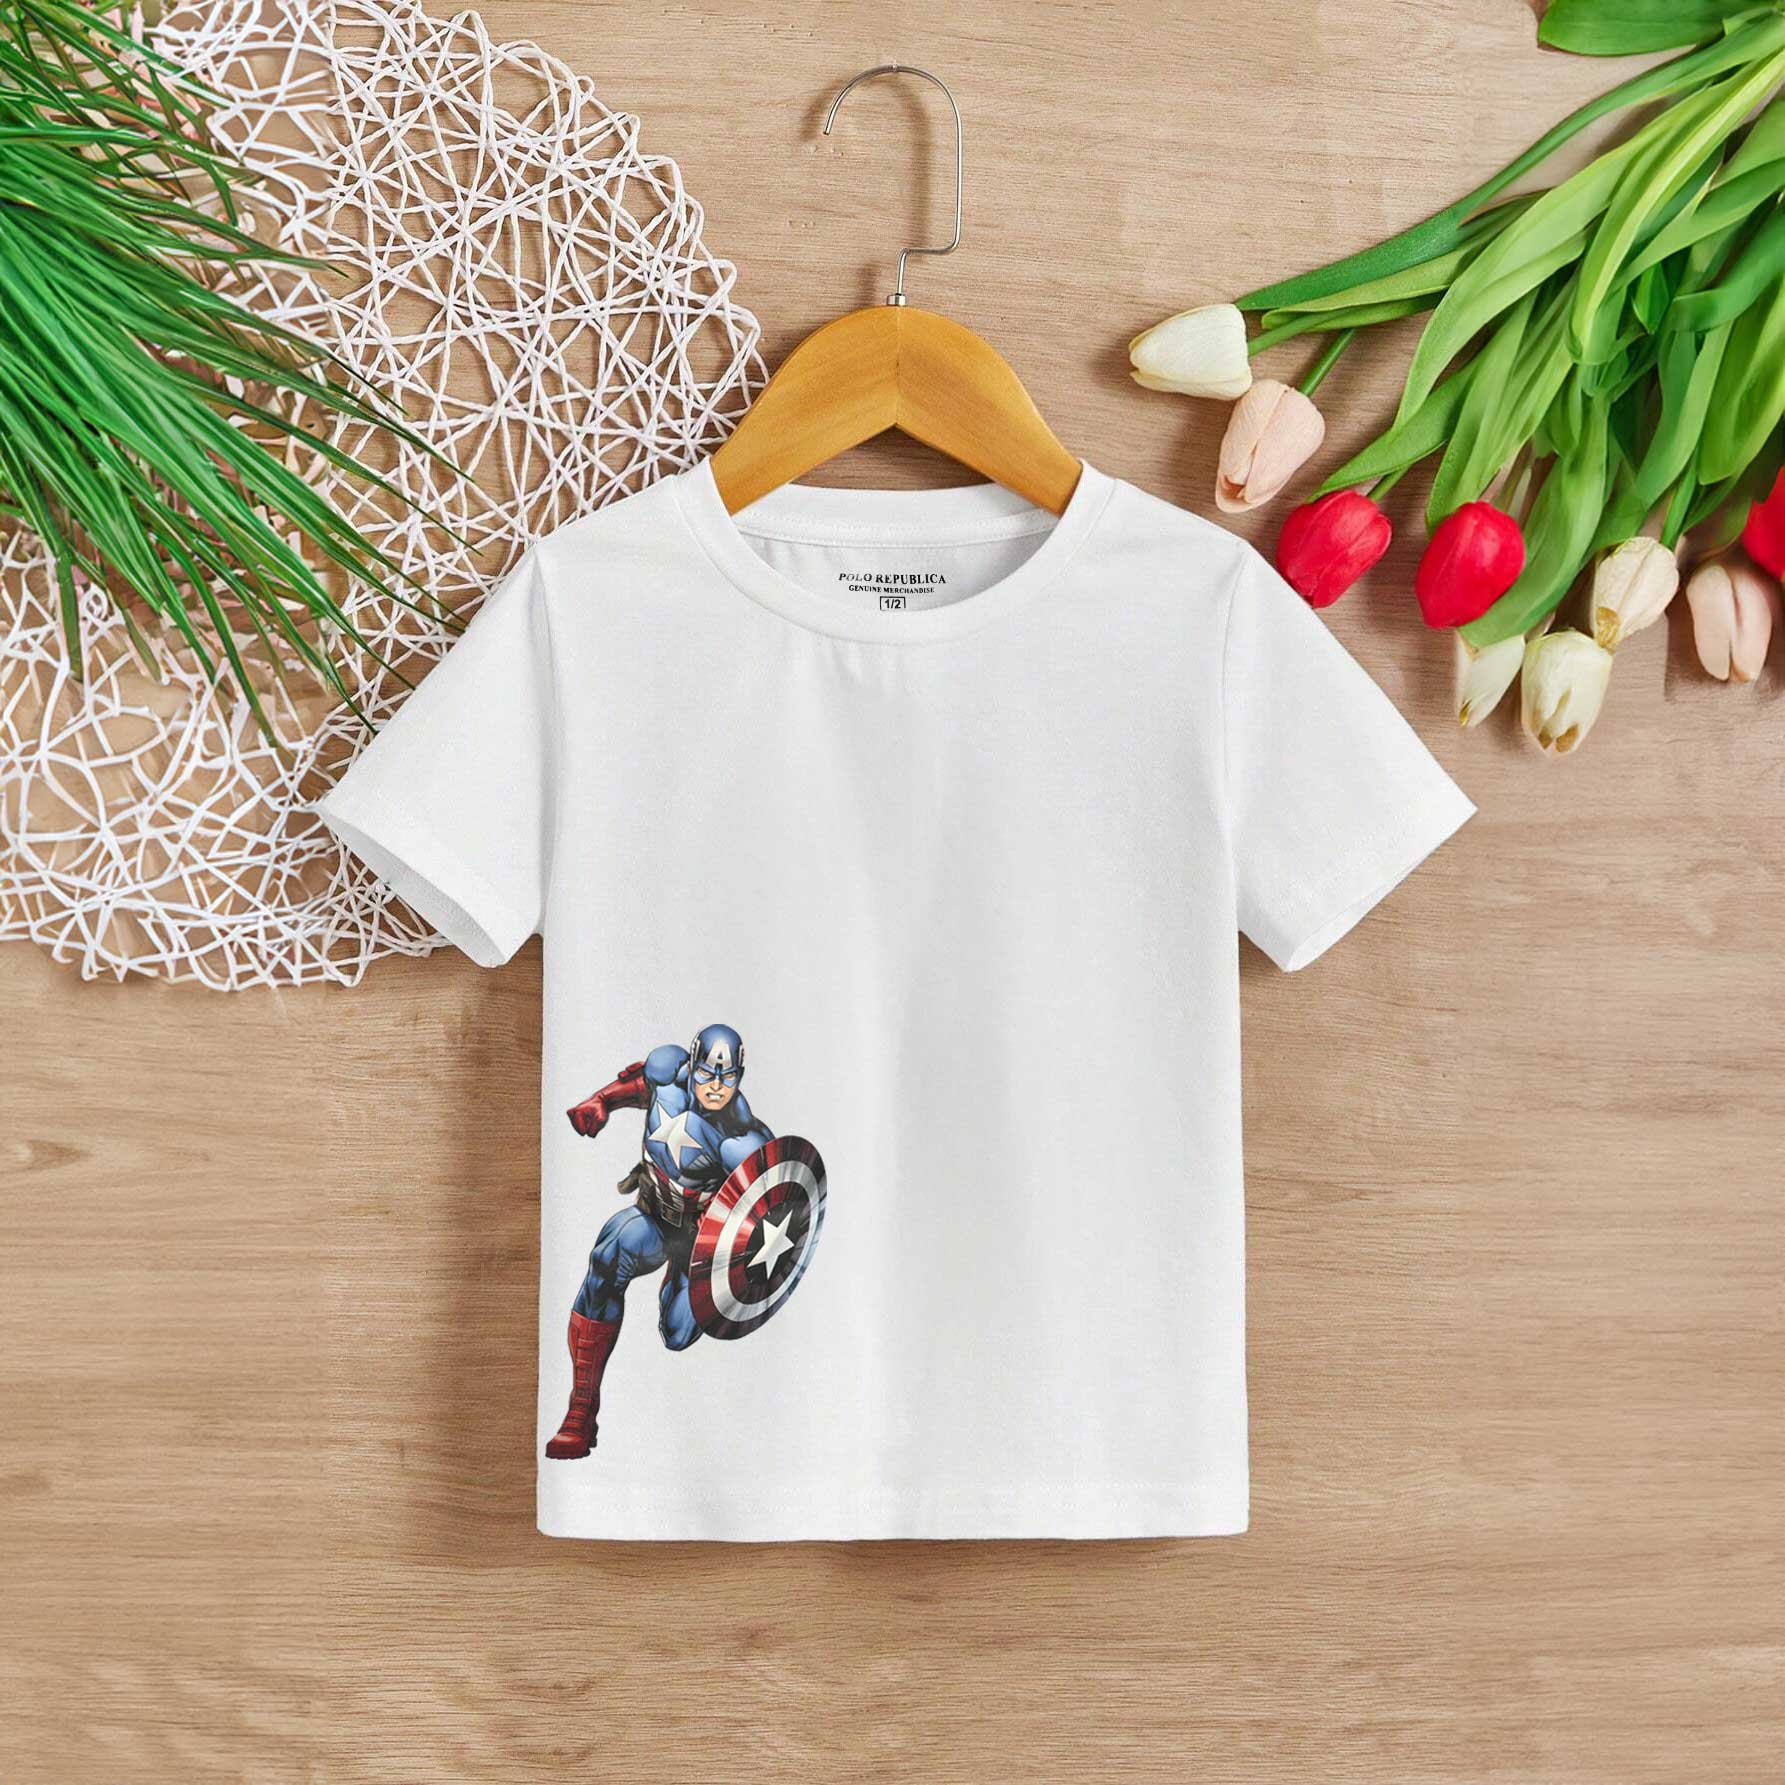 Polo Republica Boy's Captain America Printed Tee Shirt